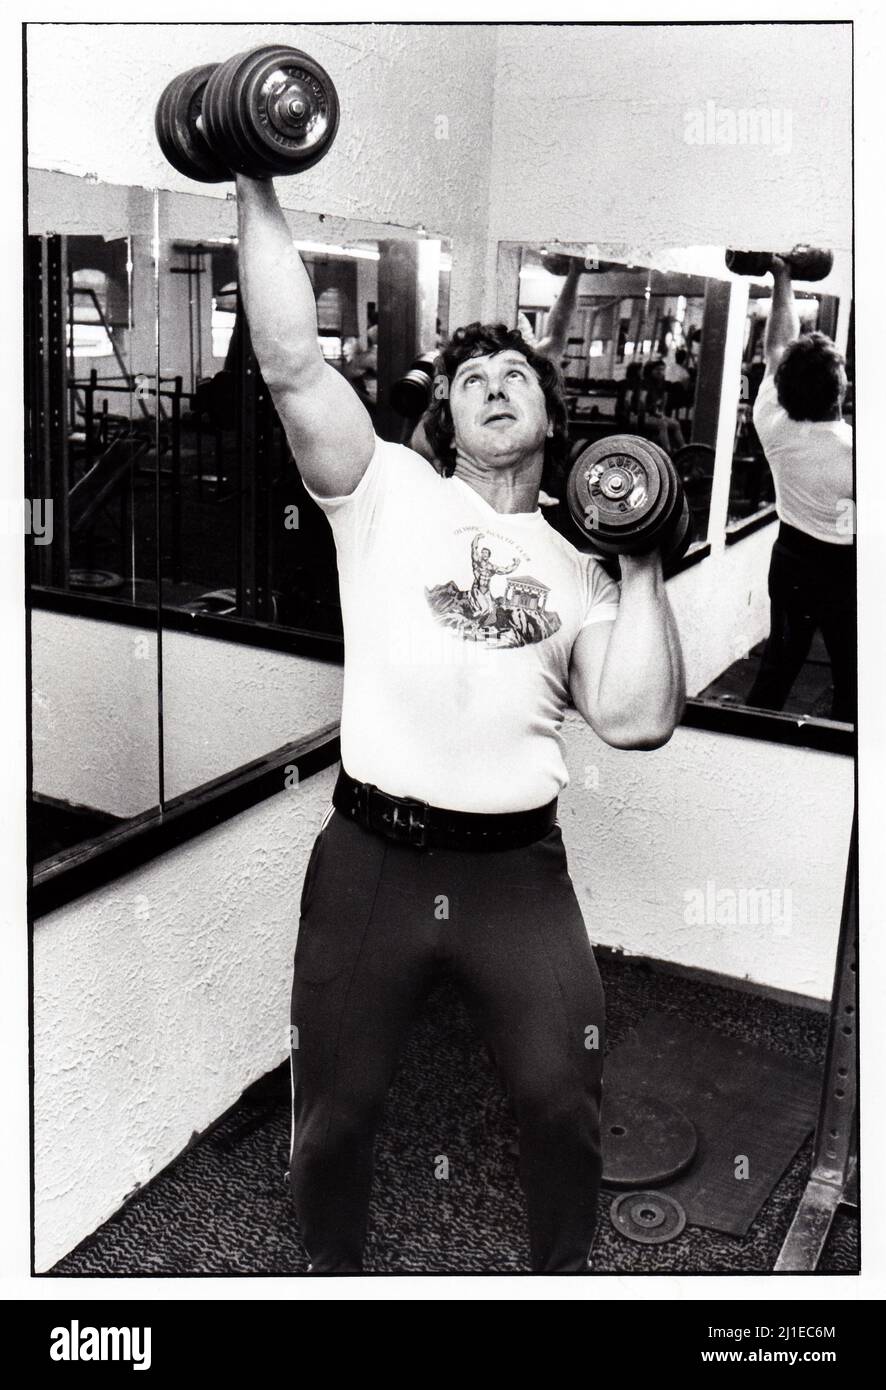 Al Oerter, cuatro veces ganador olímpico medallista de oro. En Long Island, Nueva York levantando pesas pesadas en un gimnasio. 1979 Foto de stock